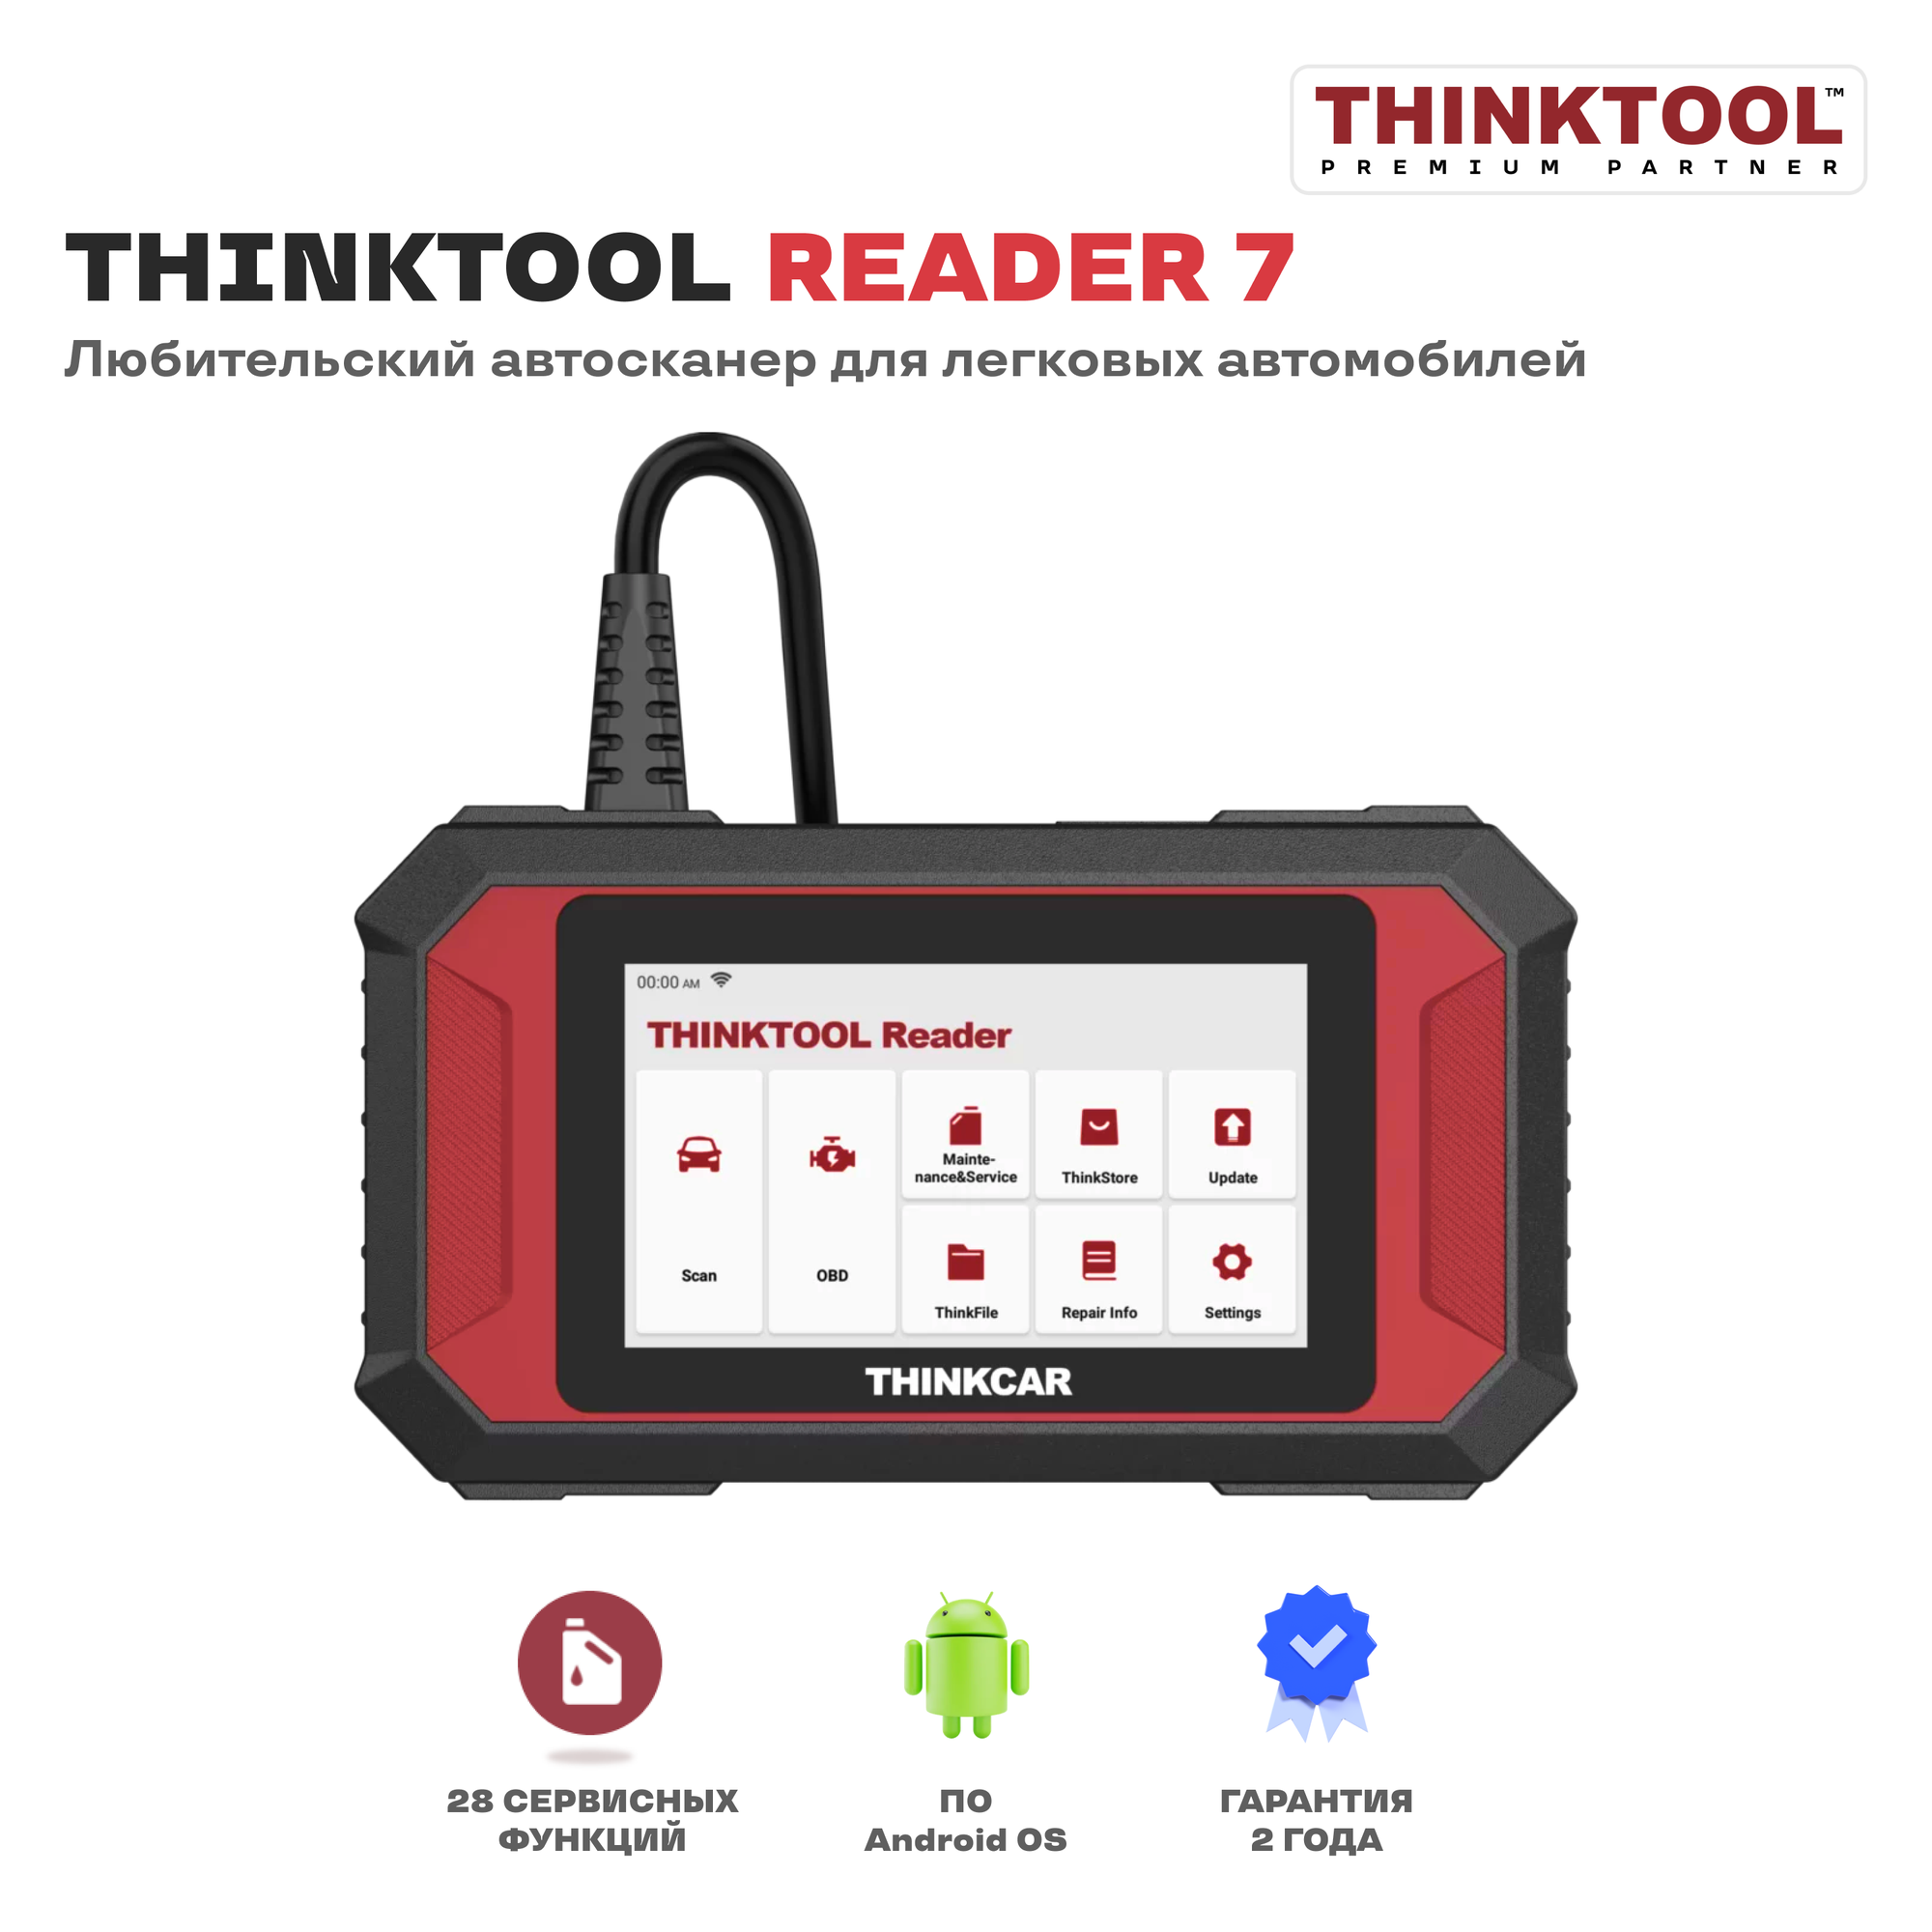 THINKTOOL READER 7 автосканер для диагностики легковых автомобилей THINKCAR